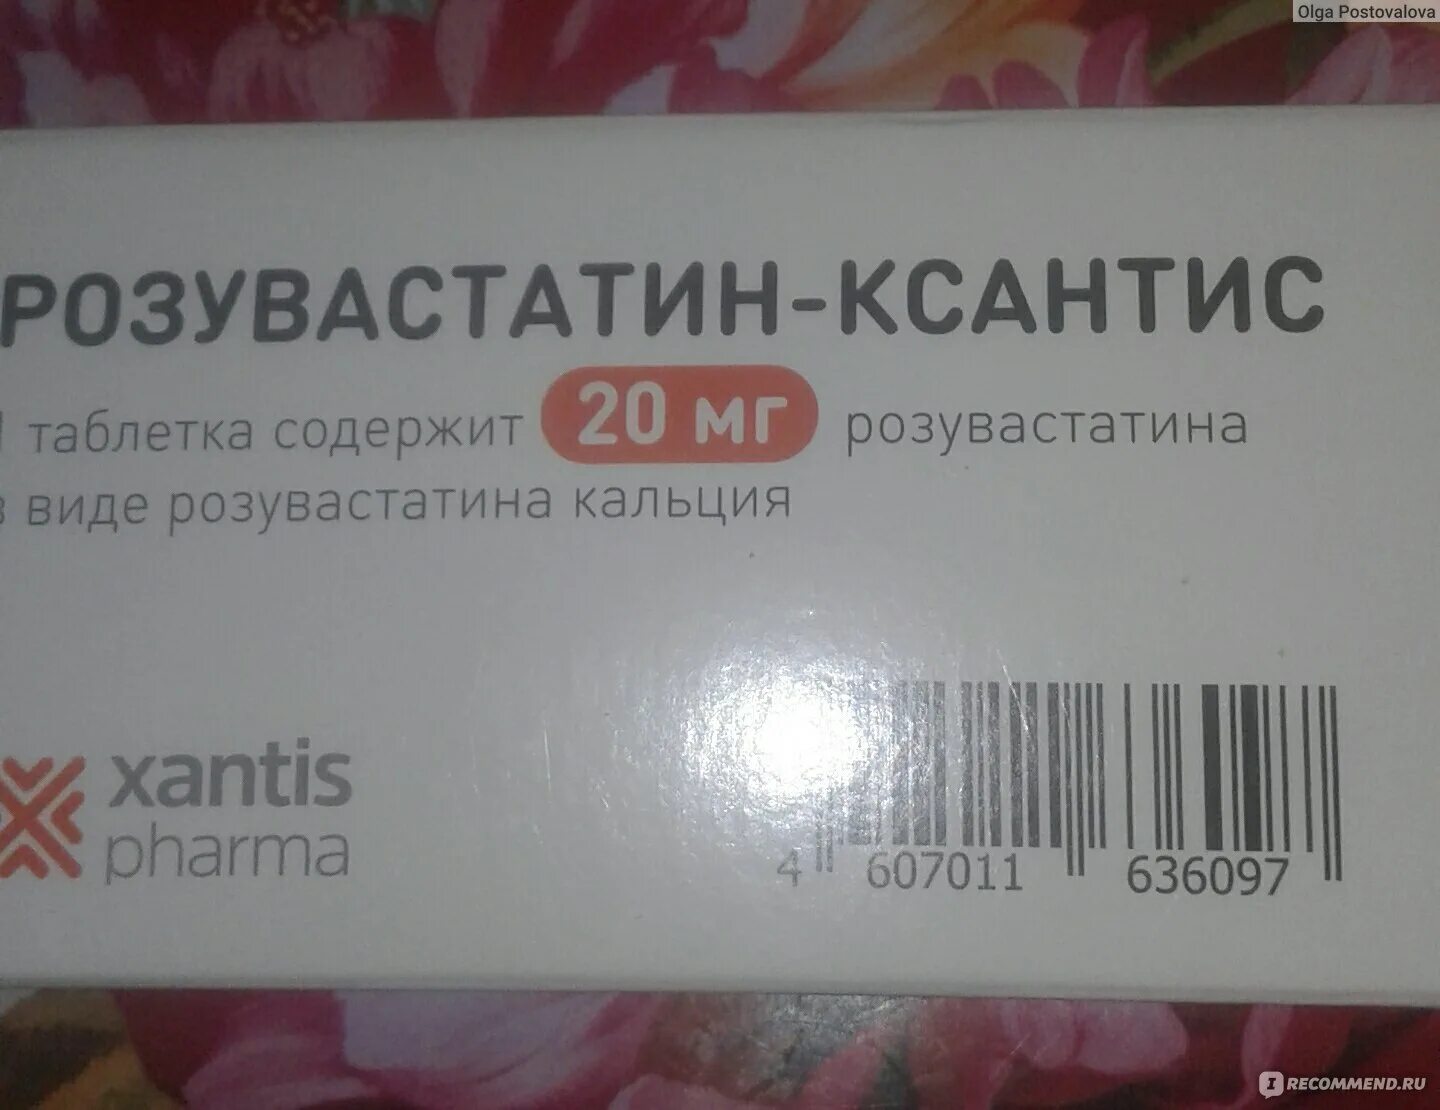 Розувастатин КСАНТИС 10 мг. Розувастатин 20 мг АЛСИ. КСАНТИС Фарма препараты. Розувастатин КСАНТИС 20.